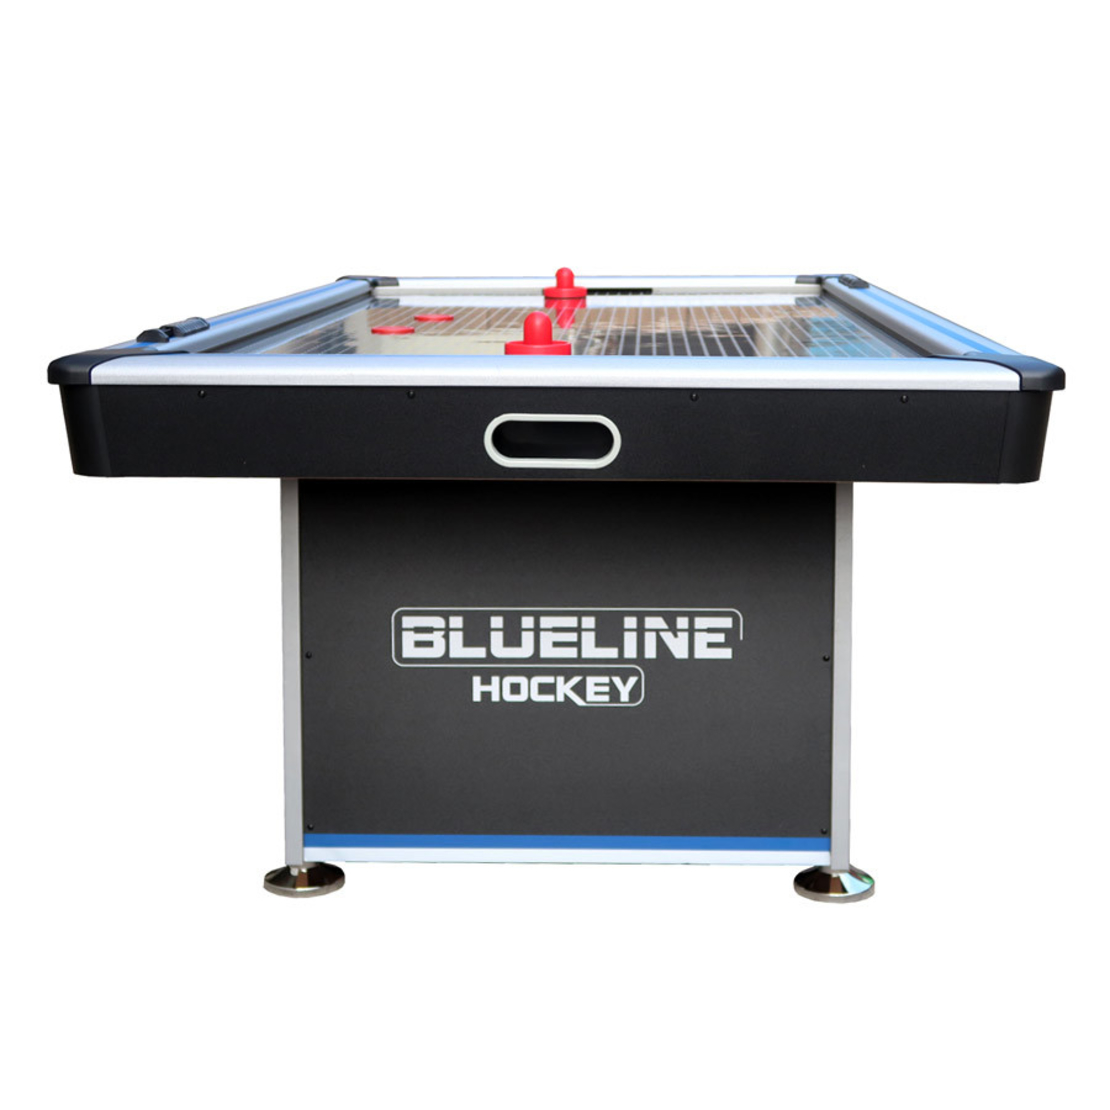 שולחן הוקי ביתי 7 פיט 3 מנועים BLUE LINE עם משטח אלומיניום